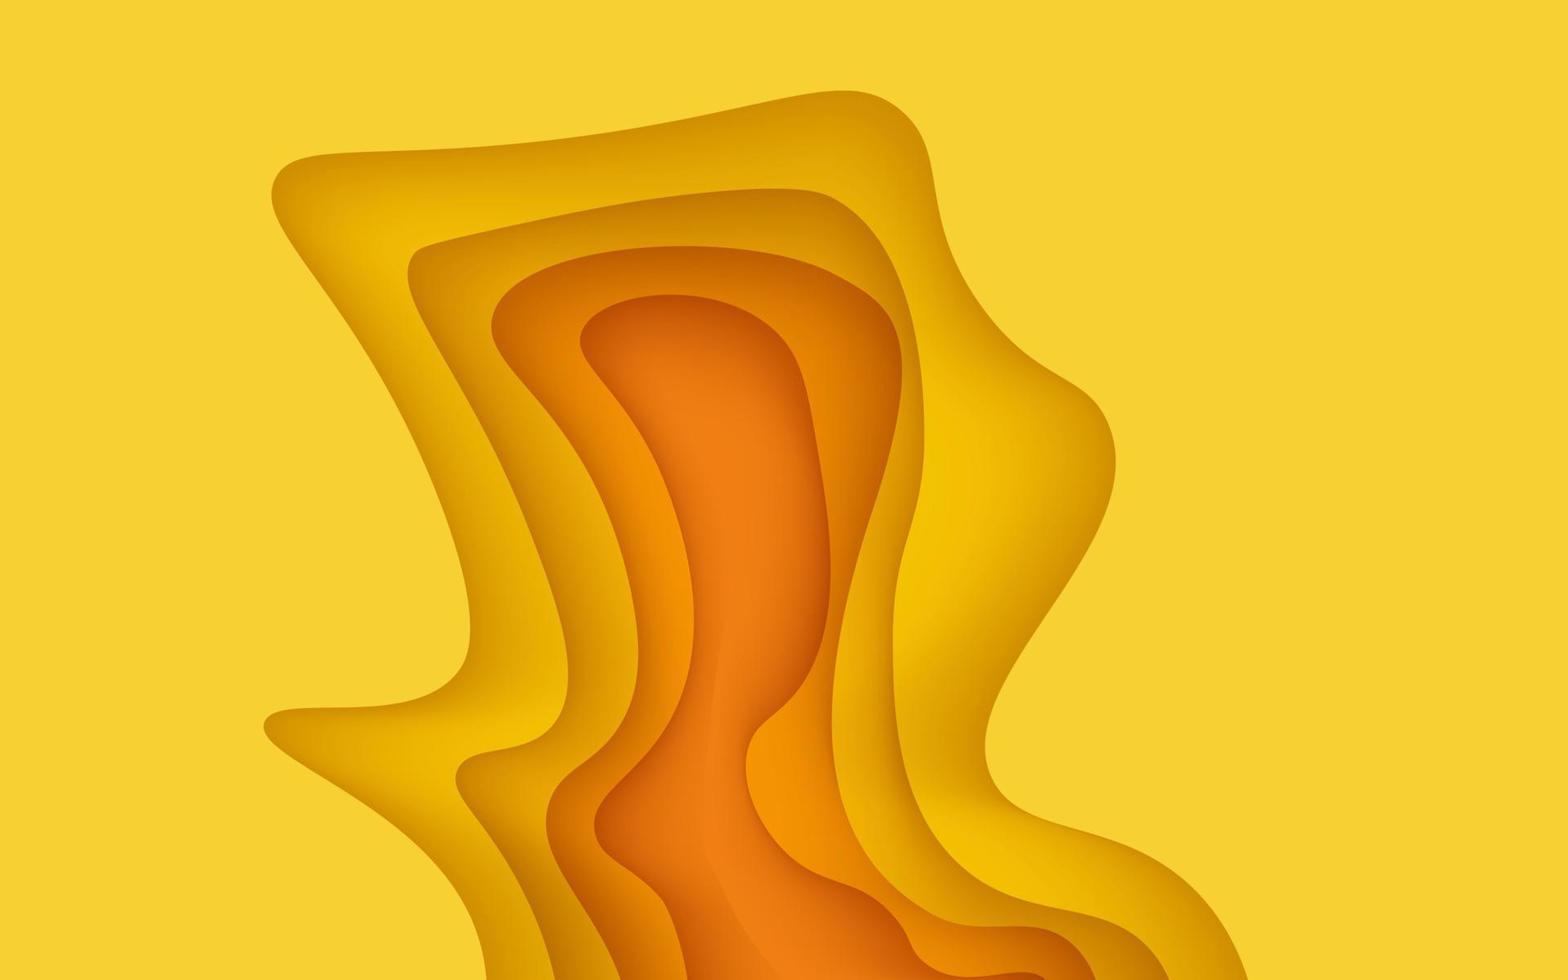 couches de papier 3d de texture de couleur jaune multicouches dans la bannière de vecteur de gradient. conception abstraite de fond d'art découpé en papier pour le modèle de site Web. concept de carte topographique ou coupe de papier origami lisse